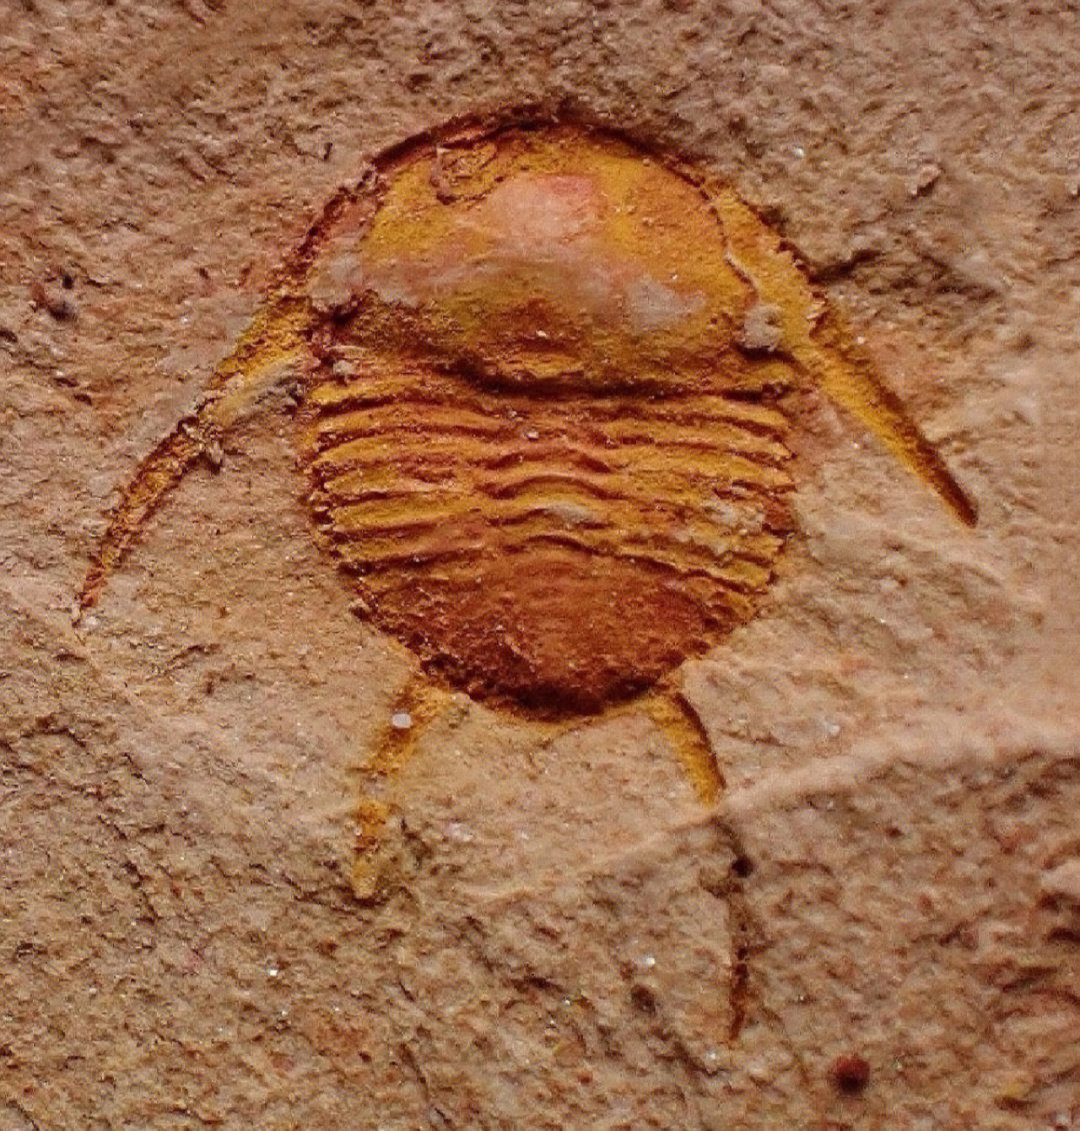 虫类化石图片